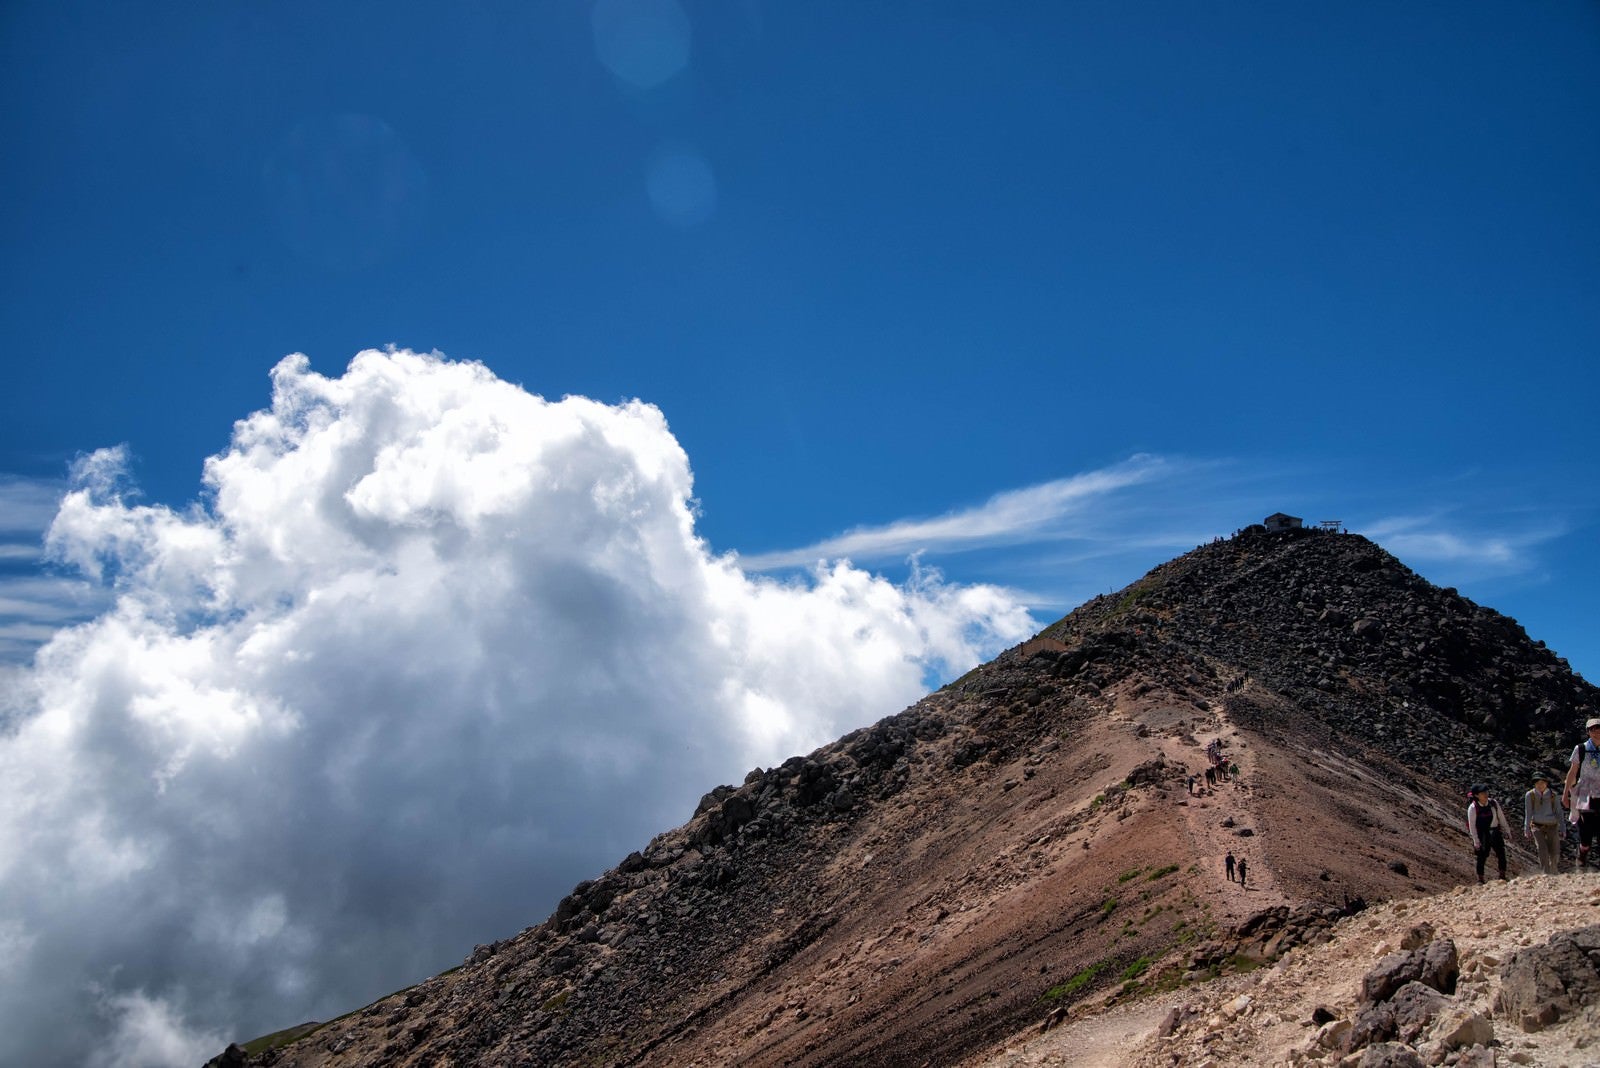 「乗鞍剣ヶ峰の登山道に沸く積雲」の写真